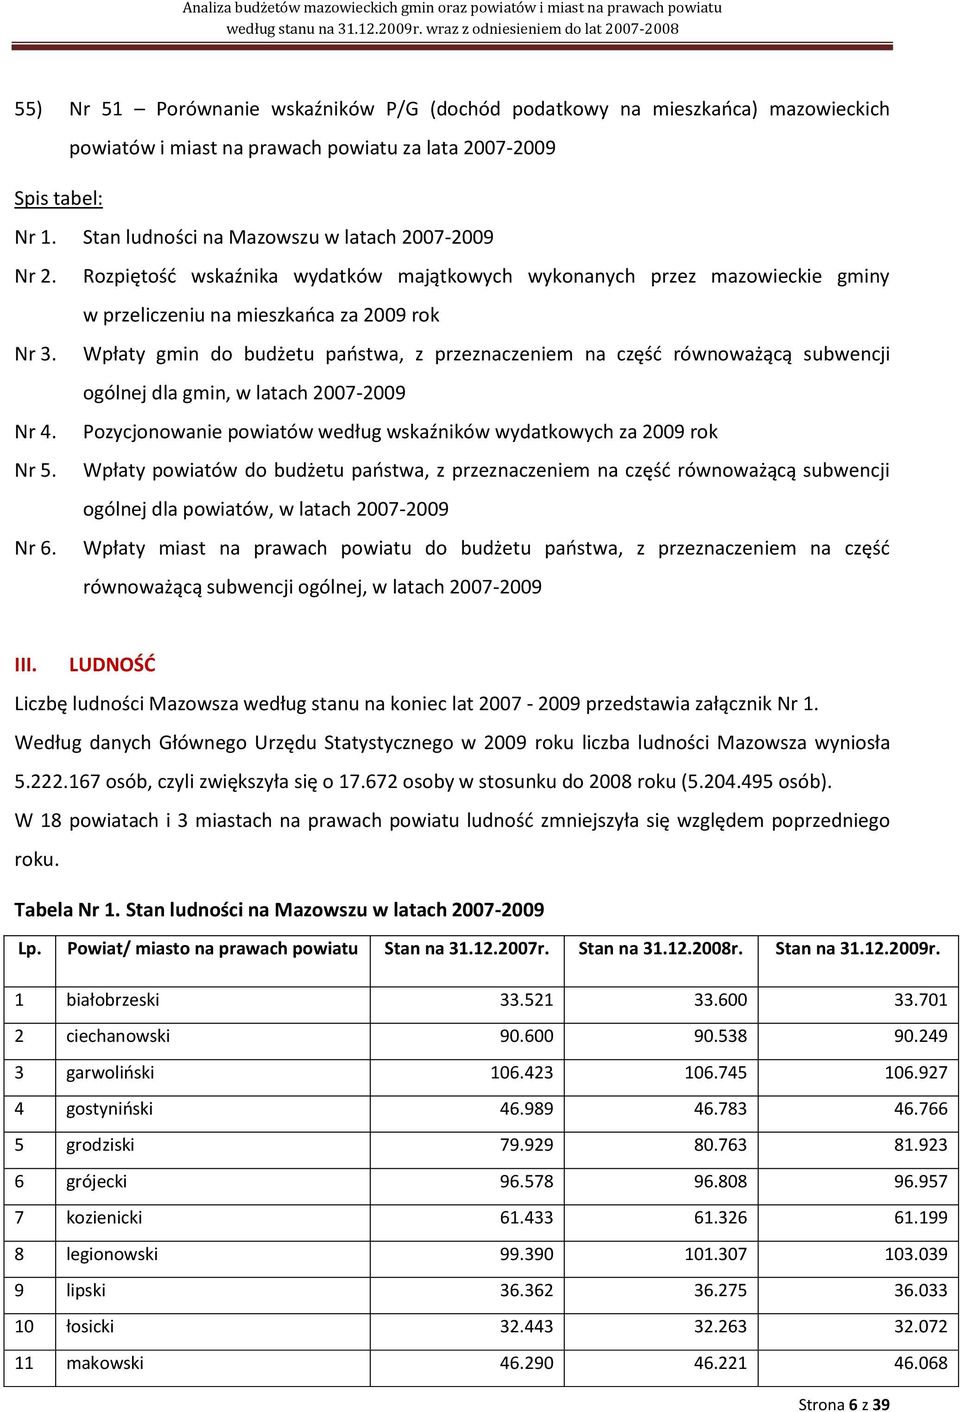 Wpłaty gmin do budżetu paostwa, z przeznaczeniem na częśd równoważącą subwencji ogólnej dla gmin, w latach 2007-2009 Nr 4. Pozycjonowanie powiatów według wskaźników wydatkowych za 2009 rok Nr 5.